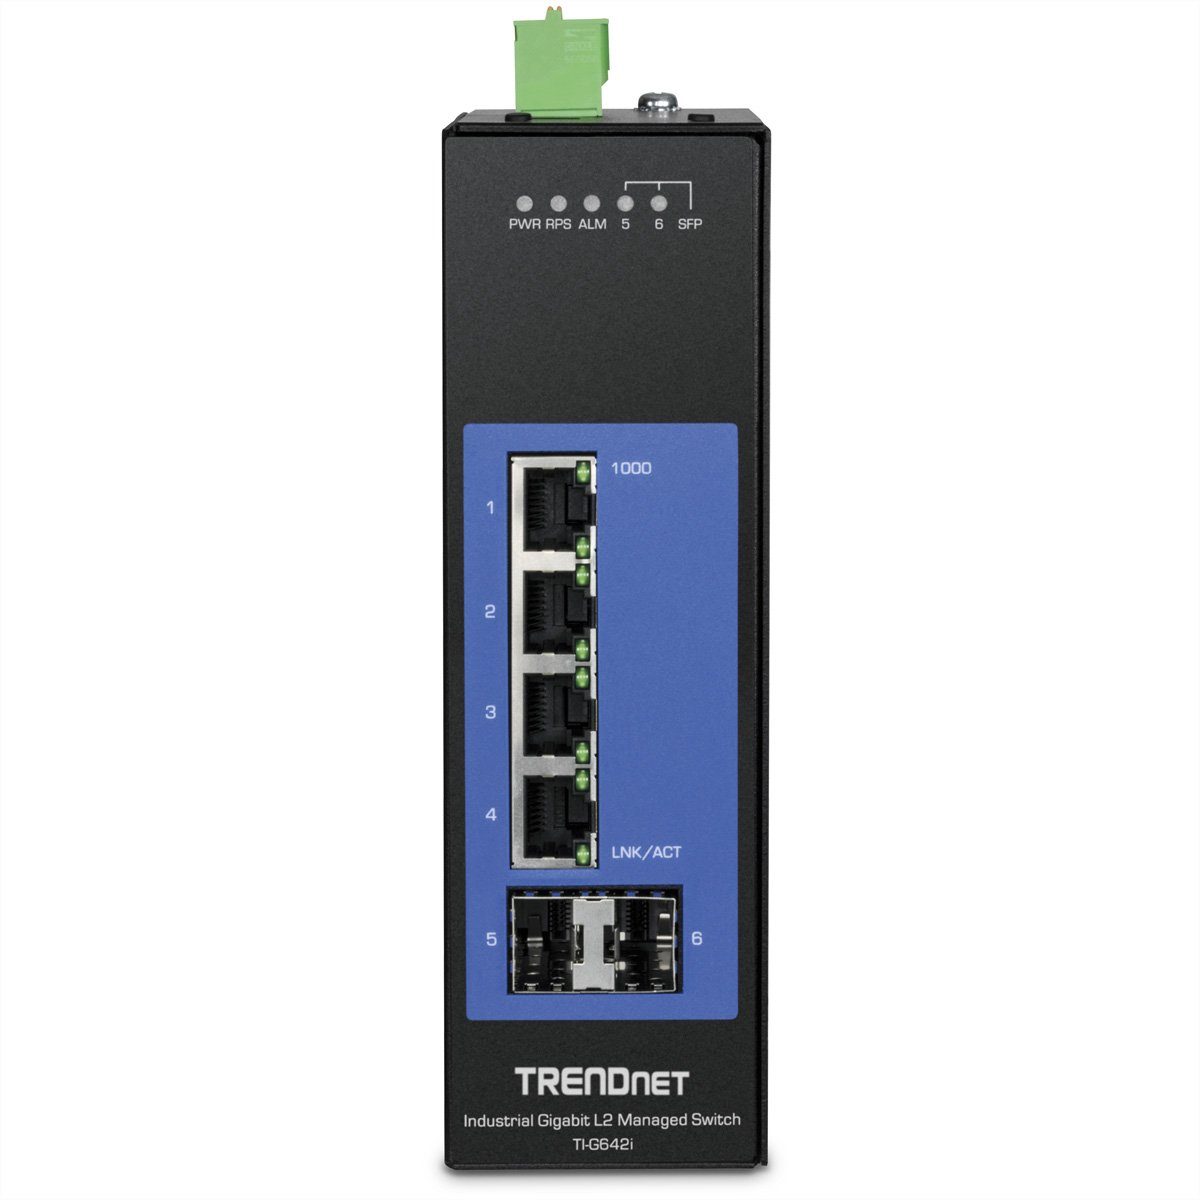 Switch Netzwerk-Switch Industrial L2 6-Port Gigabit Trendnet DIN-Rail TI-G642i